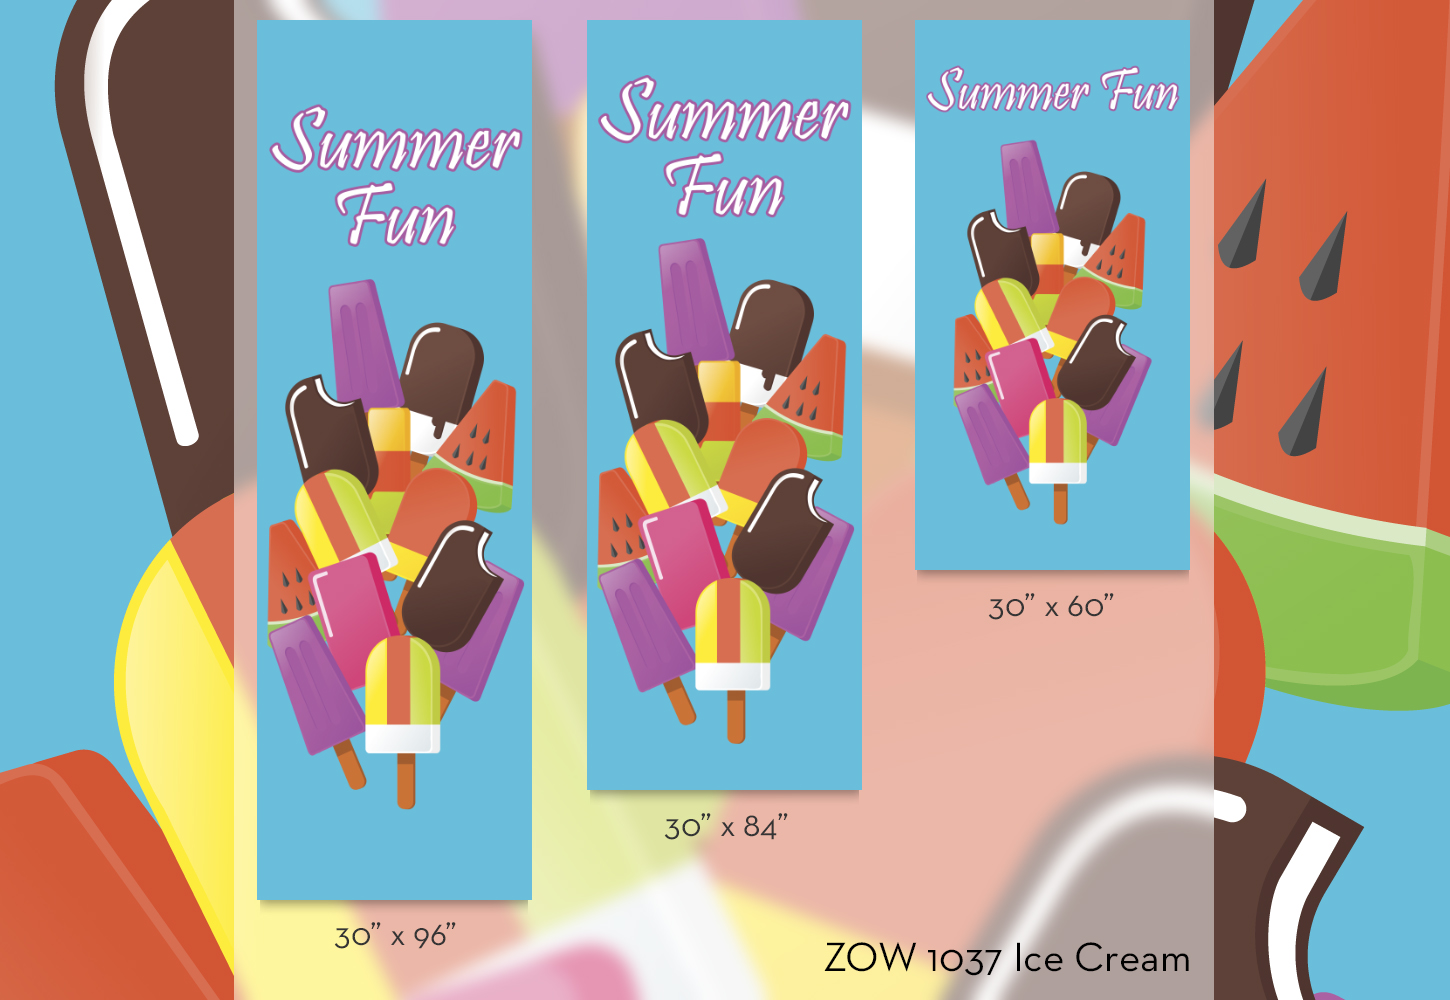 ZOW 1037 Ice Cream